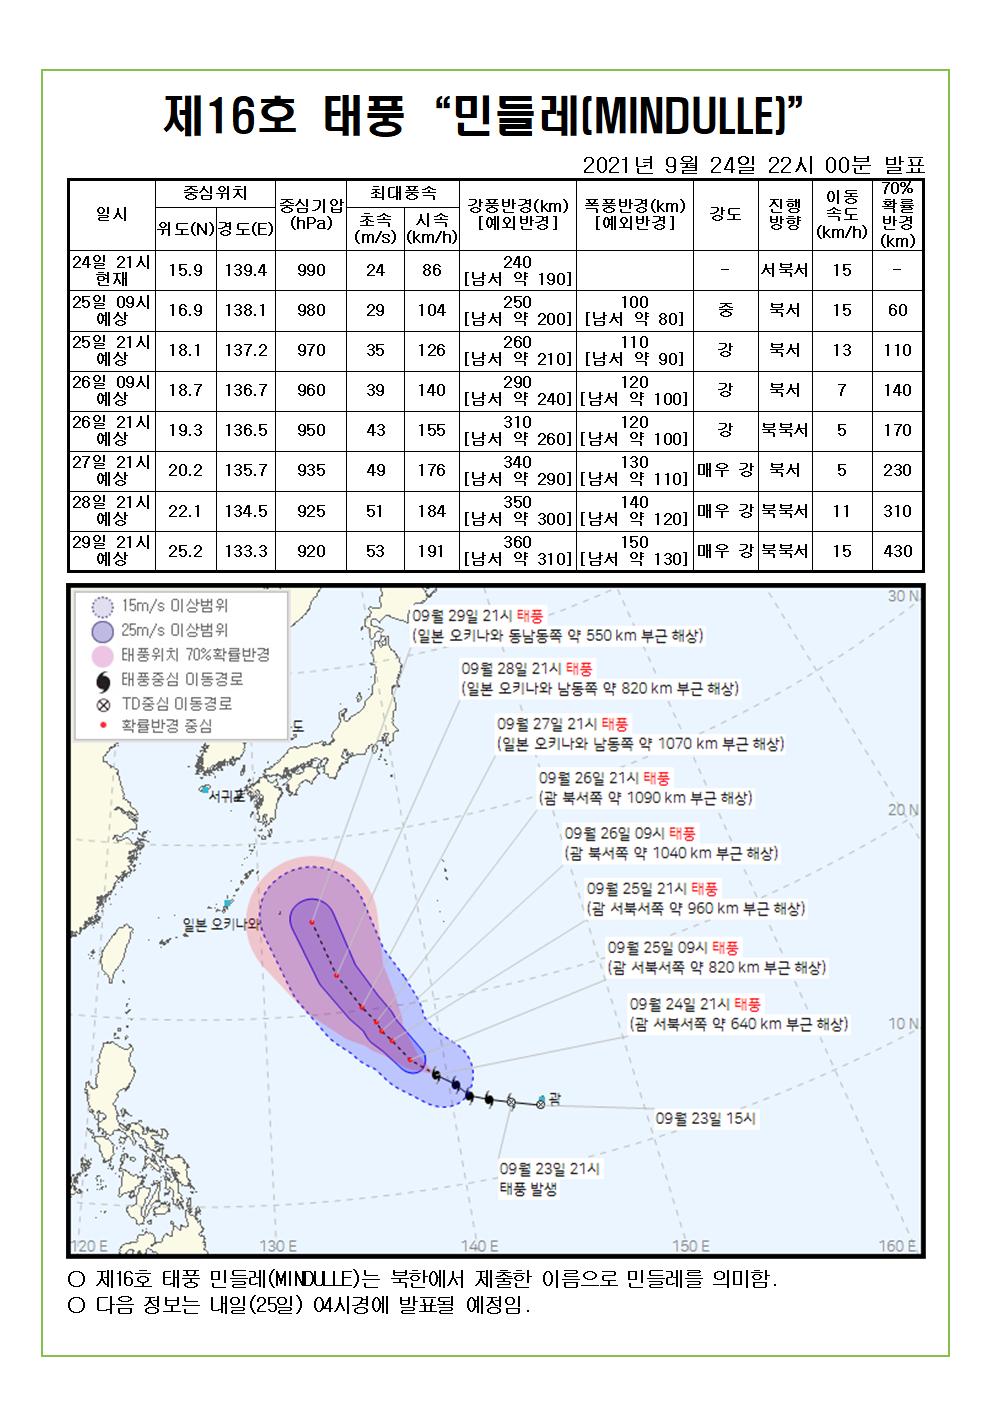 제16호 태풍 민들레 예상진로도 9월 24일(금) 22시00분 발표